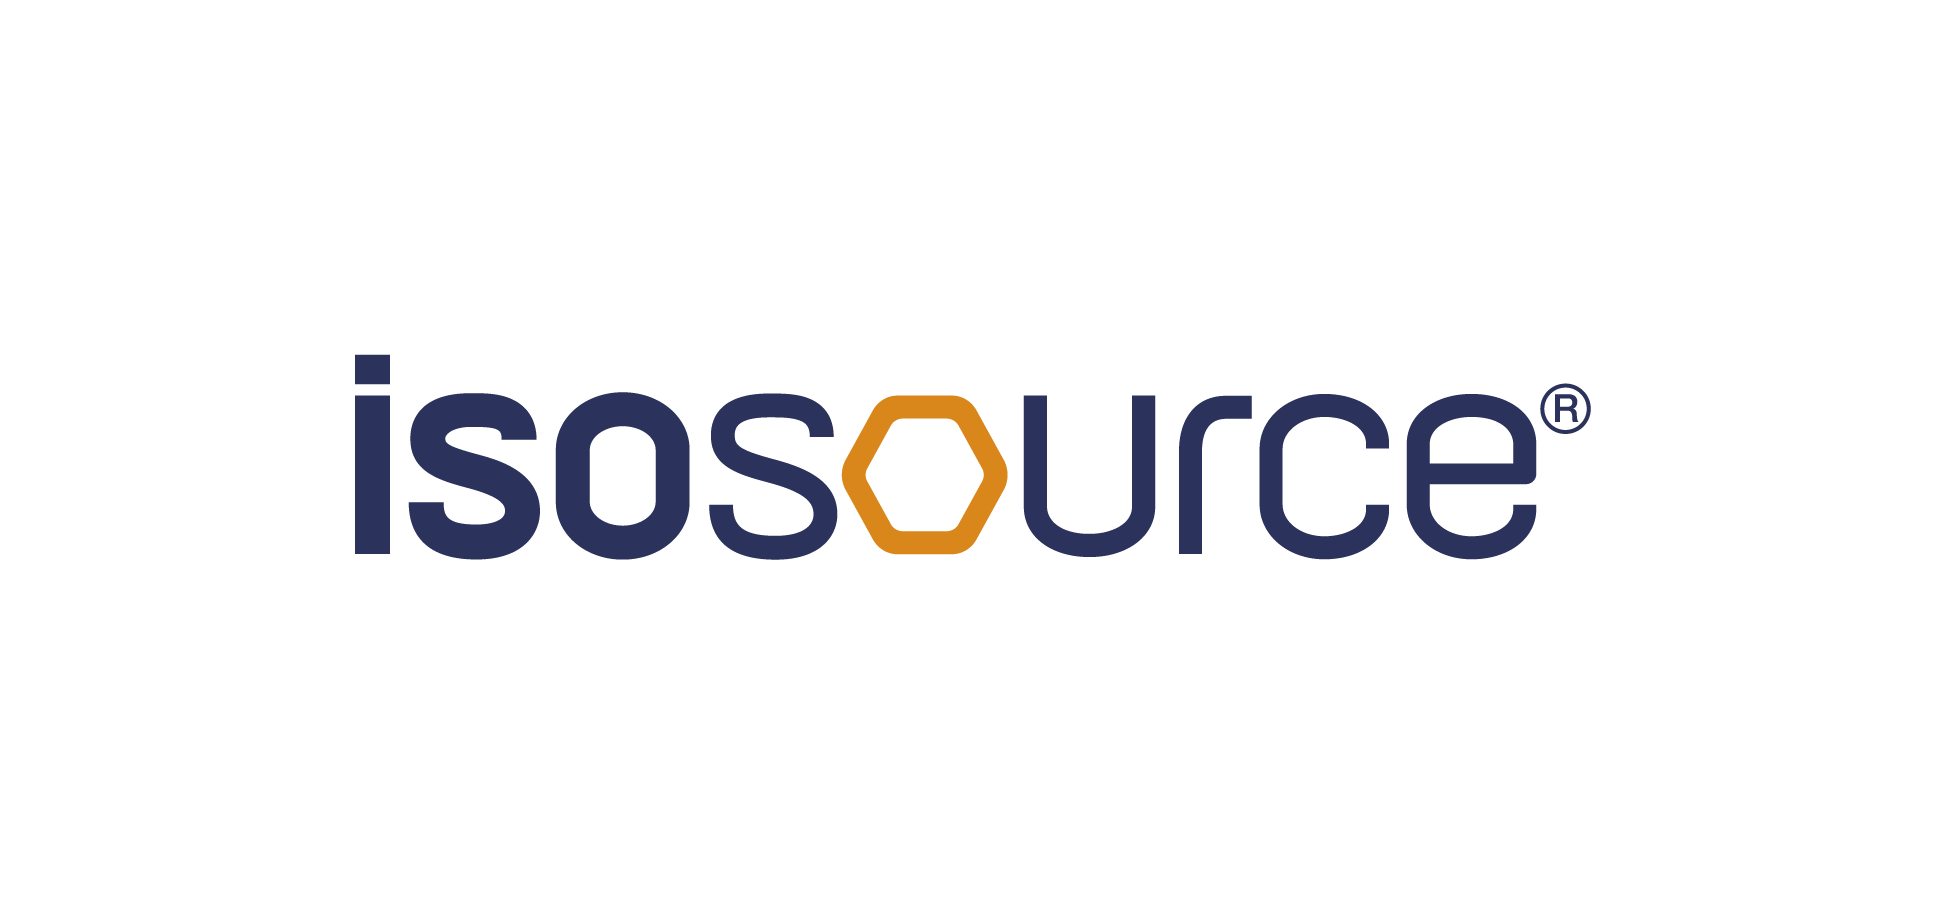 ISOSOURCE™